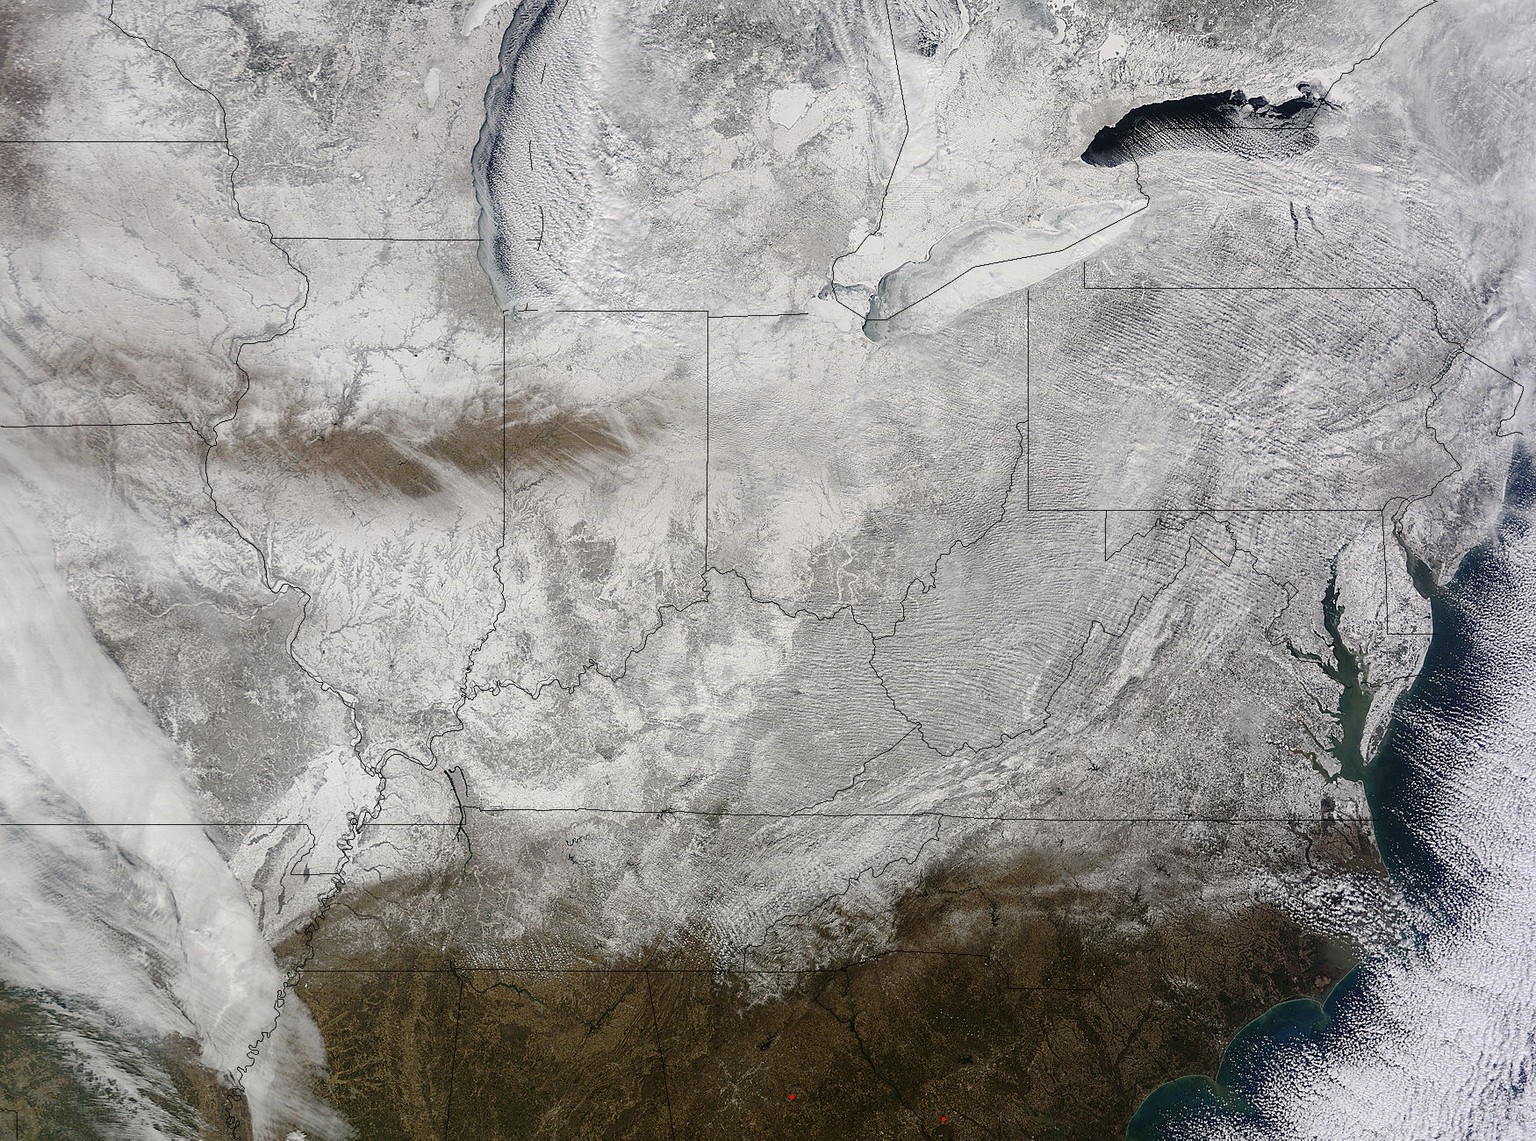 Die Nasa hat dieses Bild veröffentlicht: Die USA von oben. Weiss wie Schnee.